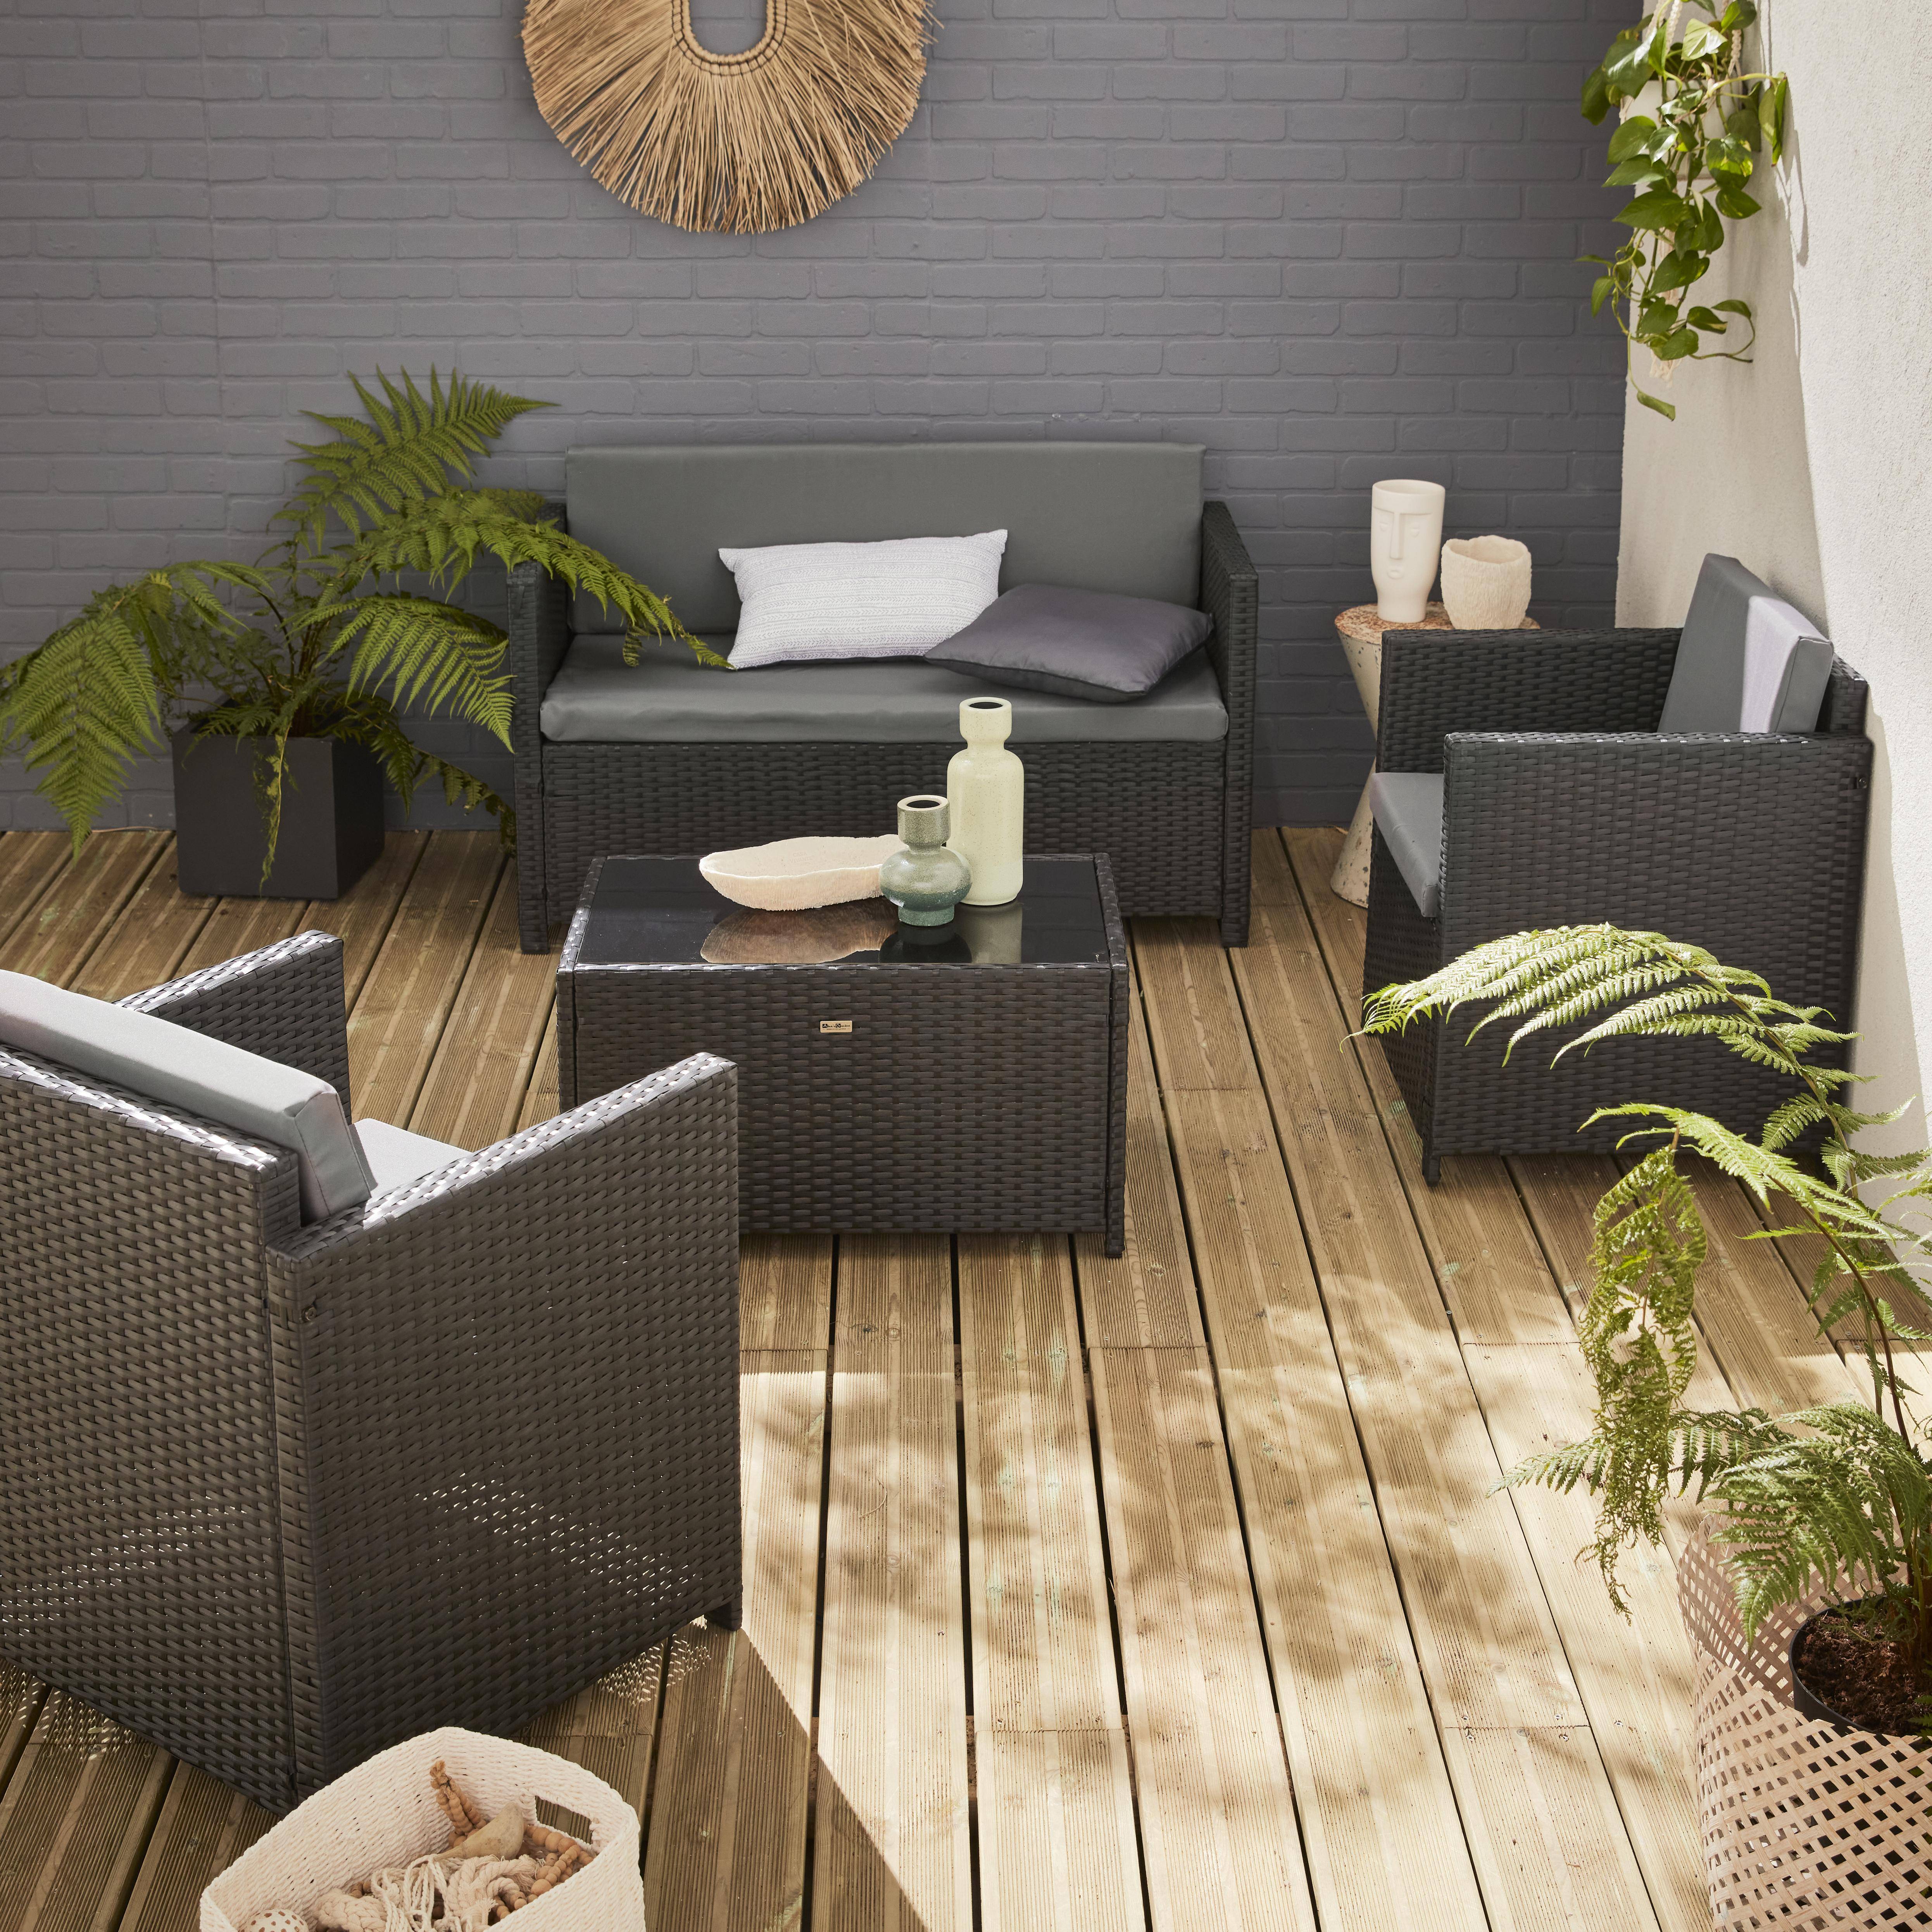 Salotto da giardino in resina intrecciata, colore: Nero - modello: Perugia - Cuscini, colore: grigio - 4 posti - 1 divano, 2 poltrone, un tavolino basso Photo1